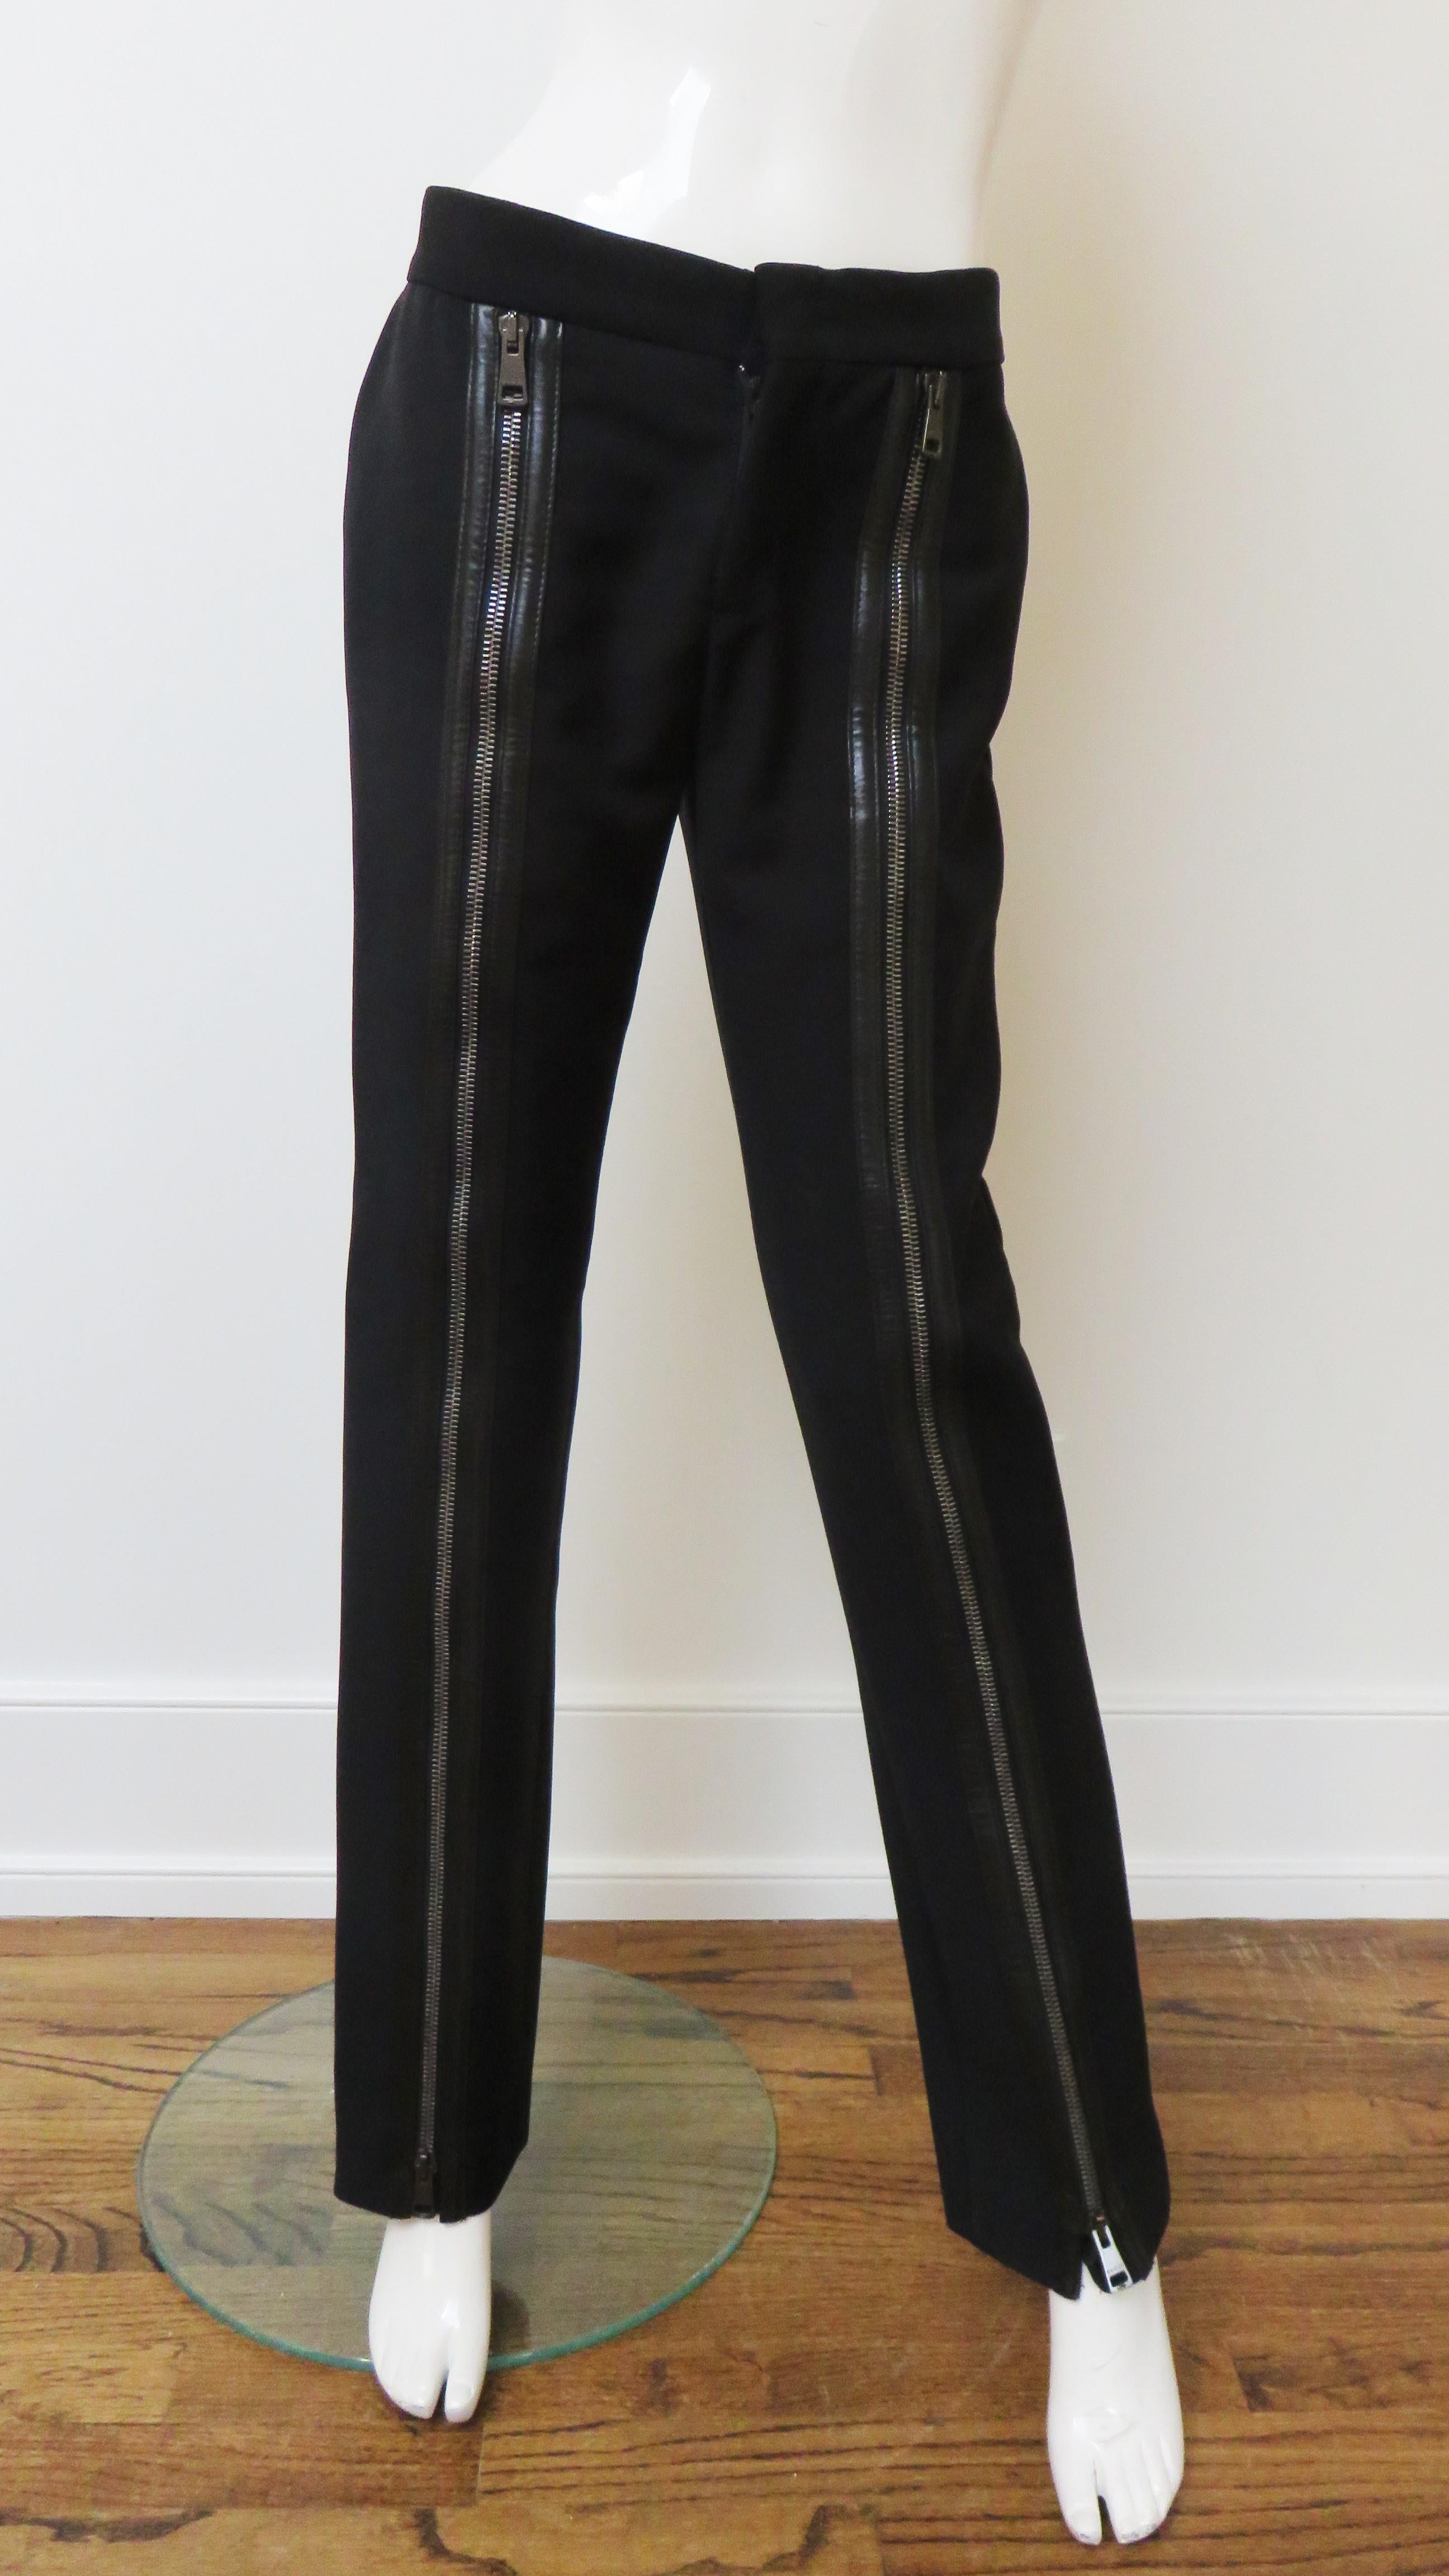 Magnifique pantalon de campagne publicitaire et de défilé en laine noire fine avec garniture en cuir par Tom Ford pour Gucci. 
Ils sont dotés d'une ceinture de 2 pouces, d'une fermeture à glissière sur le devant et de deux poches plaquées en cuir à